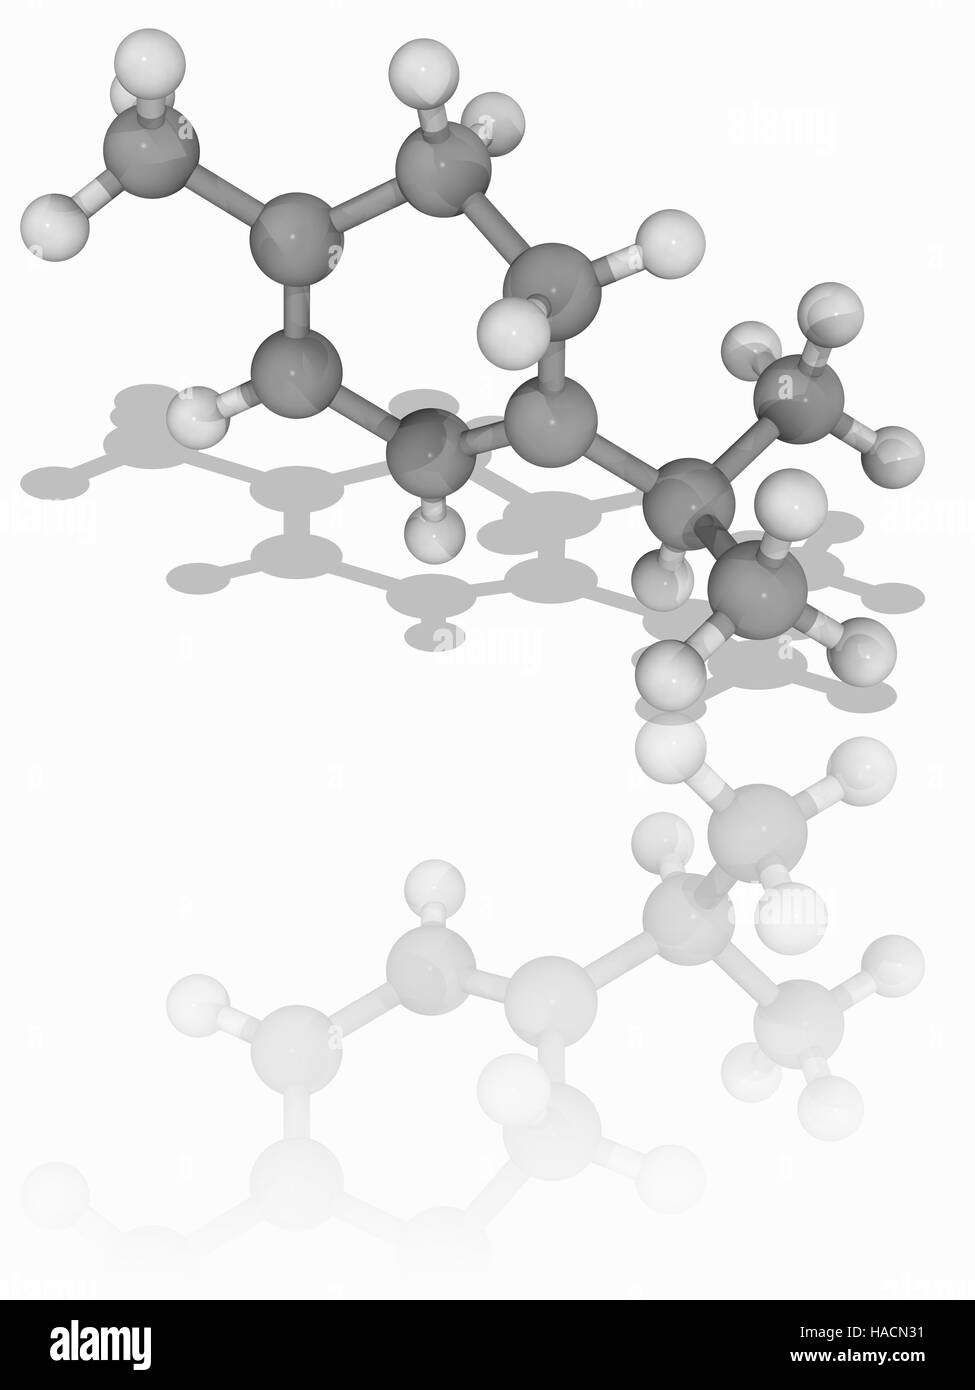 Alpha-Terpinene. Molekülmodell der zyklischen Monoterpen zusammengesetzte Alpha-Terpinene (C10. H16). Dies wird als ein Kohlenwasserstoff eines Typs bekannt als ein Terpene eingestuft. Man findet in Ölen Kardamom und Majoran. Atome als Kugeln dargestellt werden und sind farblich gekennzeichnet: Kohlenstoff (grau) und Wasserstoff (weiß). Abbildung. Stockfoto